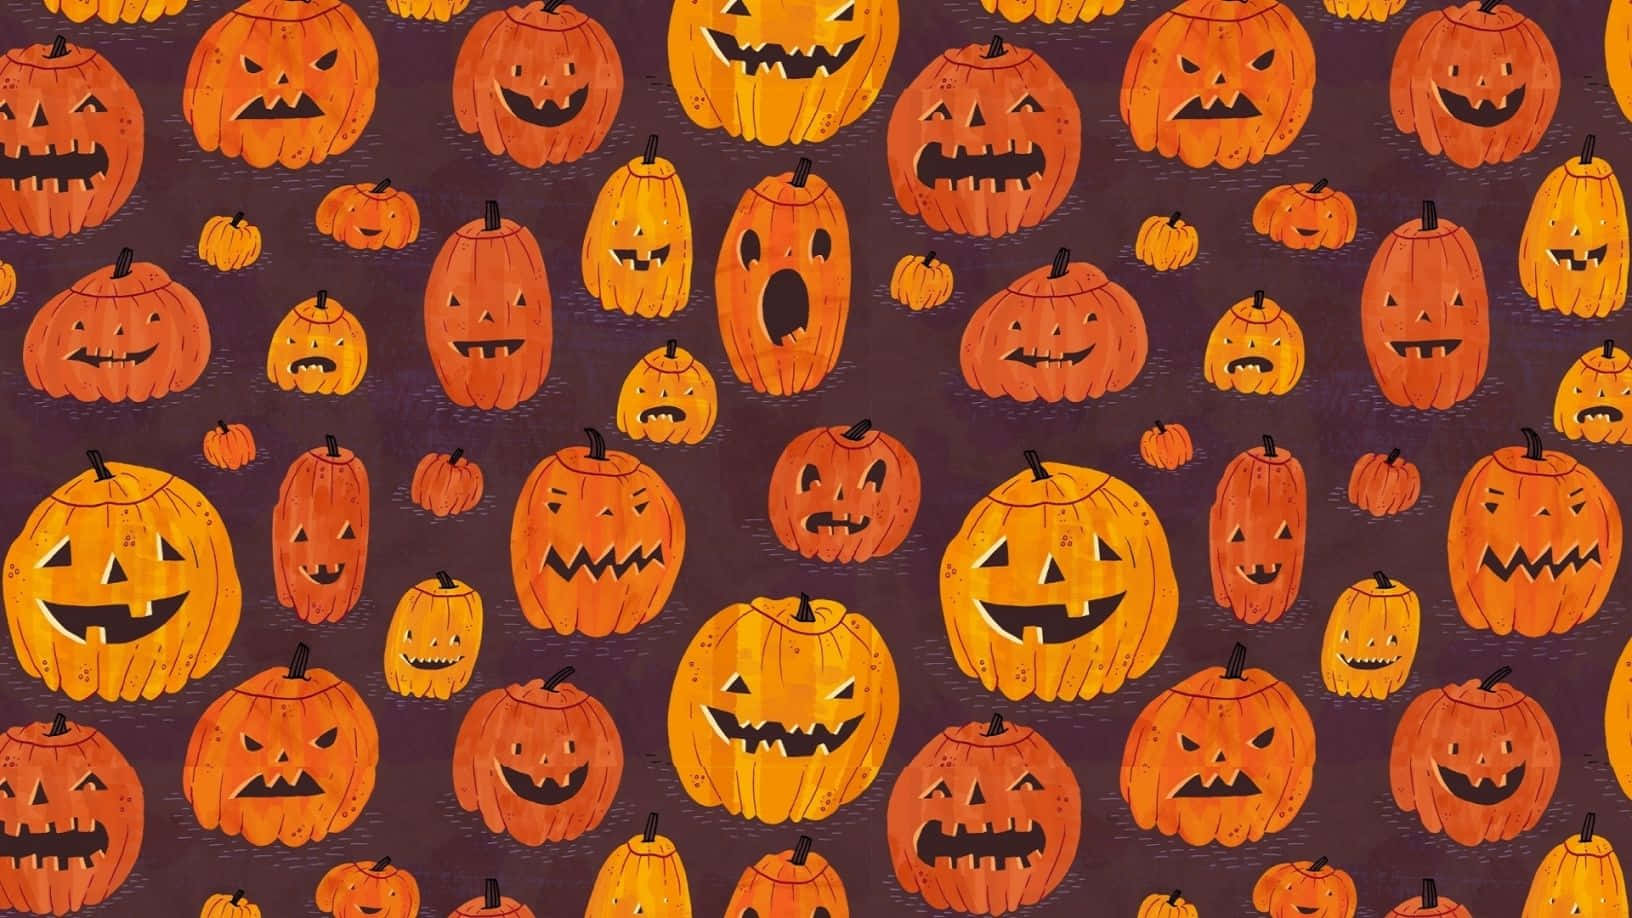 Imagende Calabazas Talladas De Halloween En Un Lindo Dibujo En 2d.